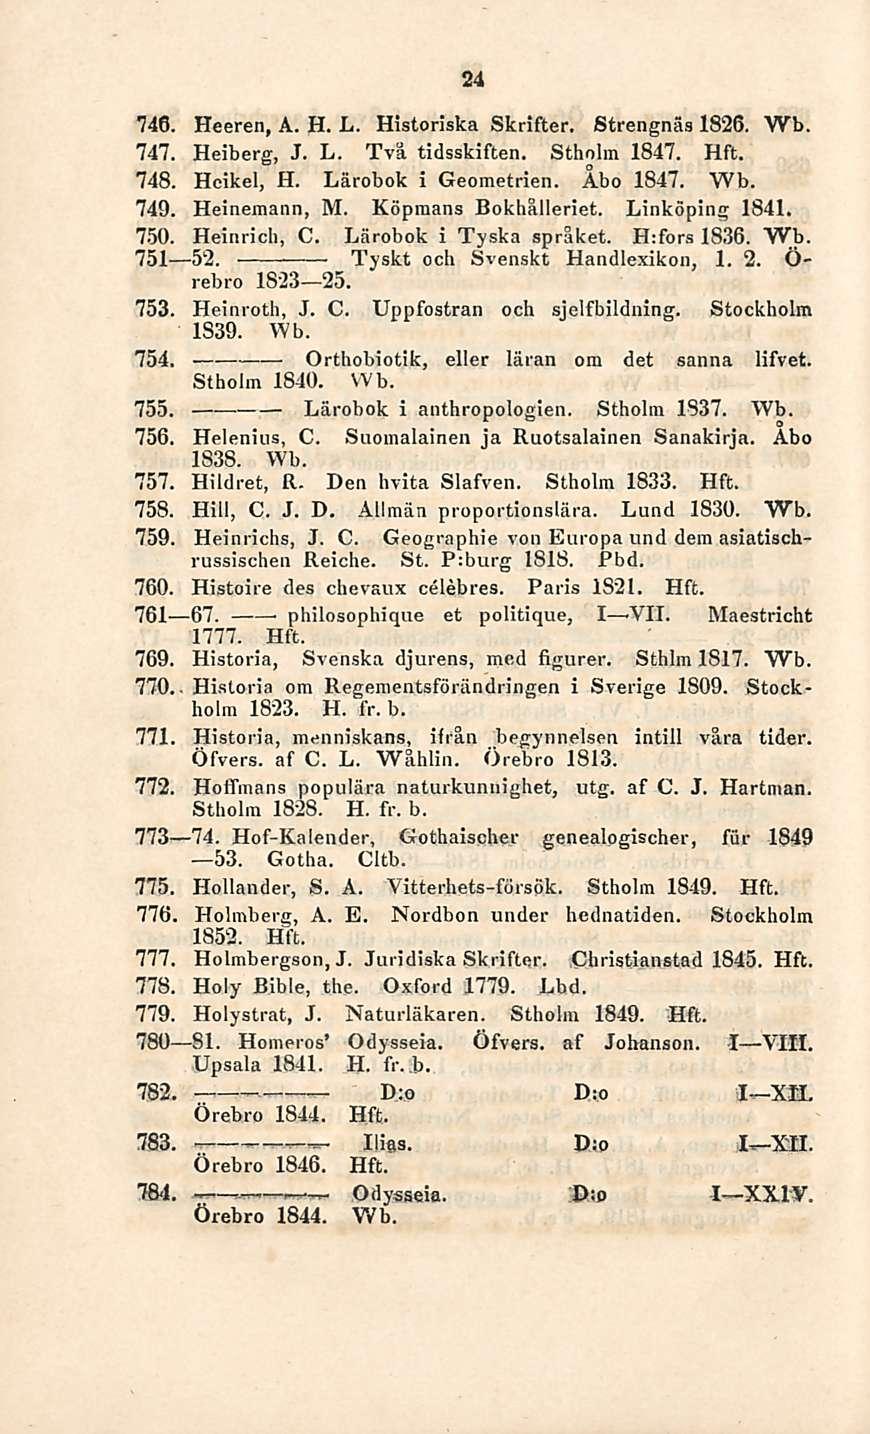 Orthobiotik, D:o - Ilias. 24 746. Heeren, A. H. L. Historiska Skrifter. Strengnäs 1826. Wb. 747. Heiberg, J. L. Två tidsskiften. Stholm 1847. Hft. 748. Heikel, H. Lärobok i Geometrien. Åbo 1847.